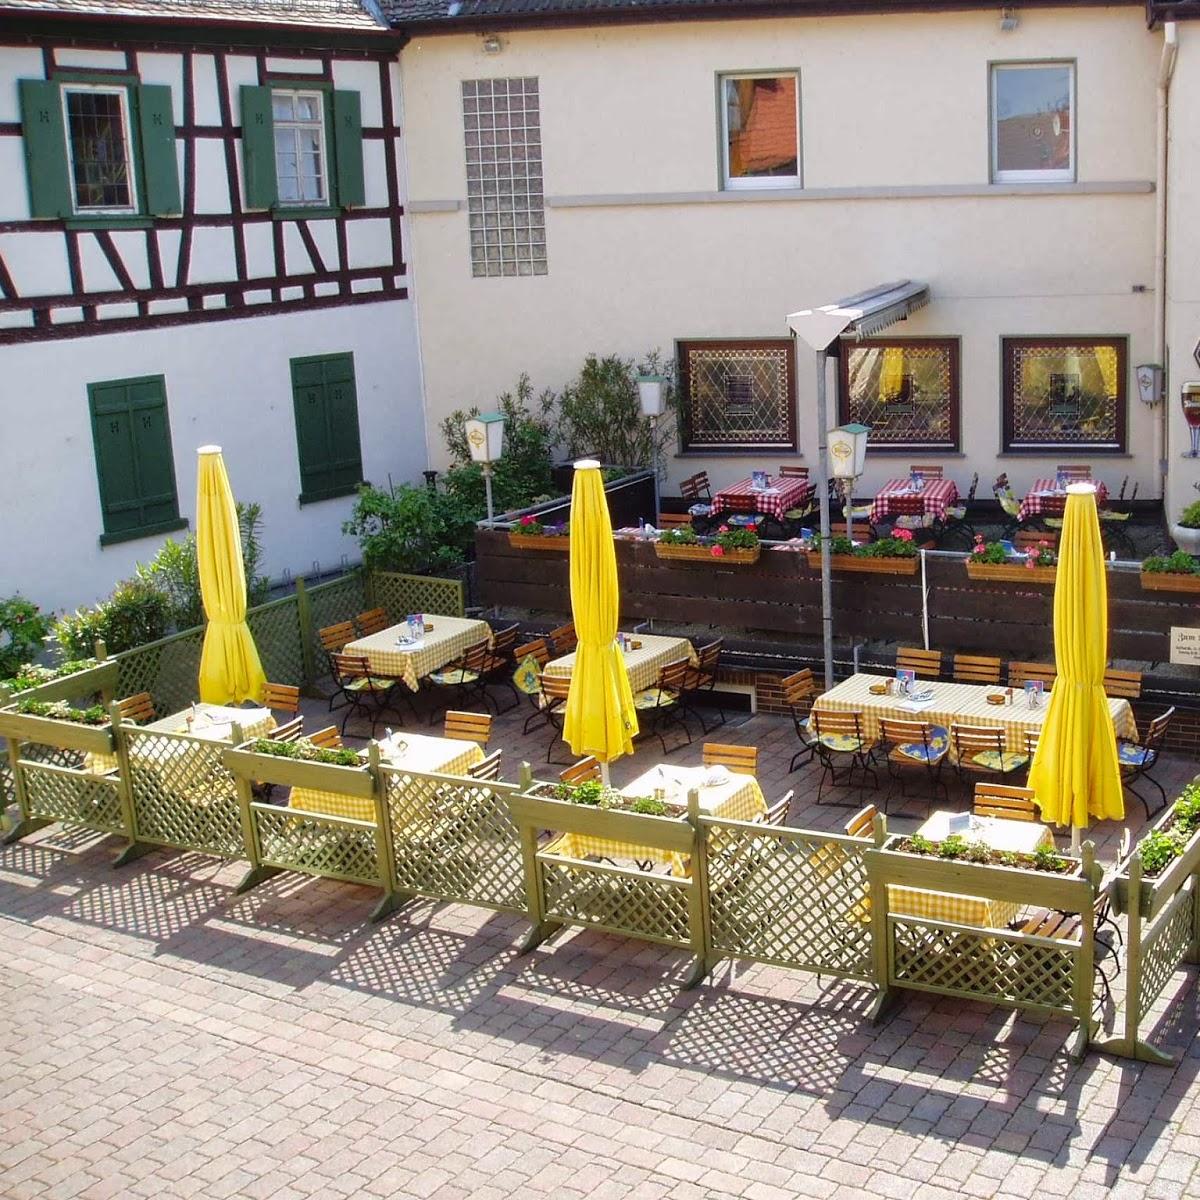 Restaurant "Chaplin´s Steakhouse & Restaurant" in  Ginsheim-Gustavsburg